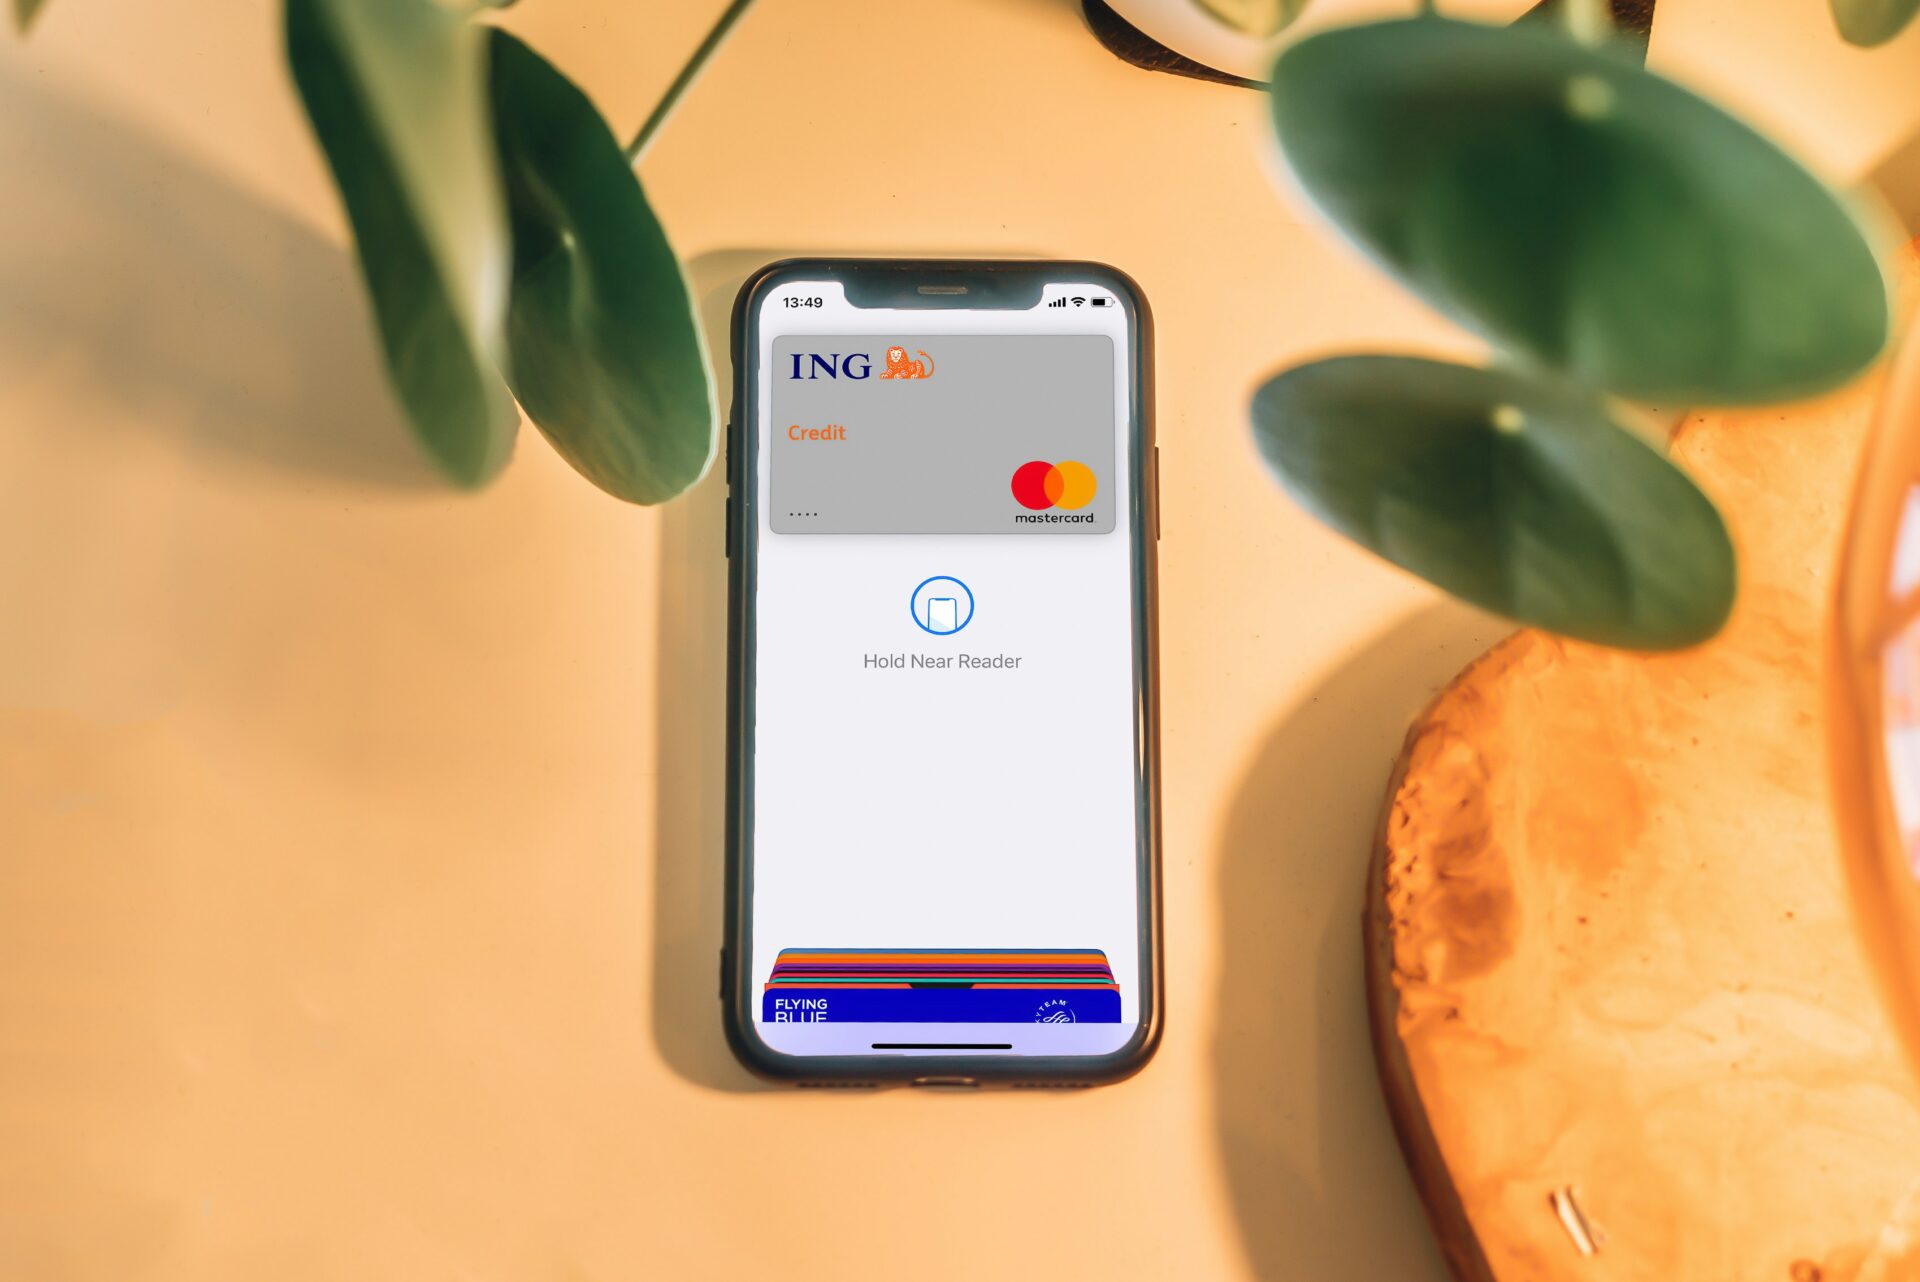 A través de un comunicado, MasterCard anunció que de la mano de Dynamic Yield crearon una inteligencia artificial destinada a ayudar a los usuarios